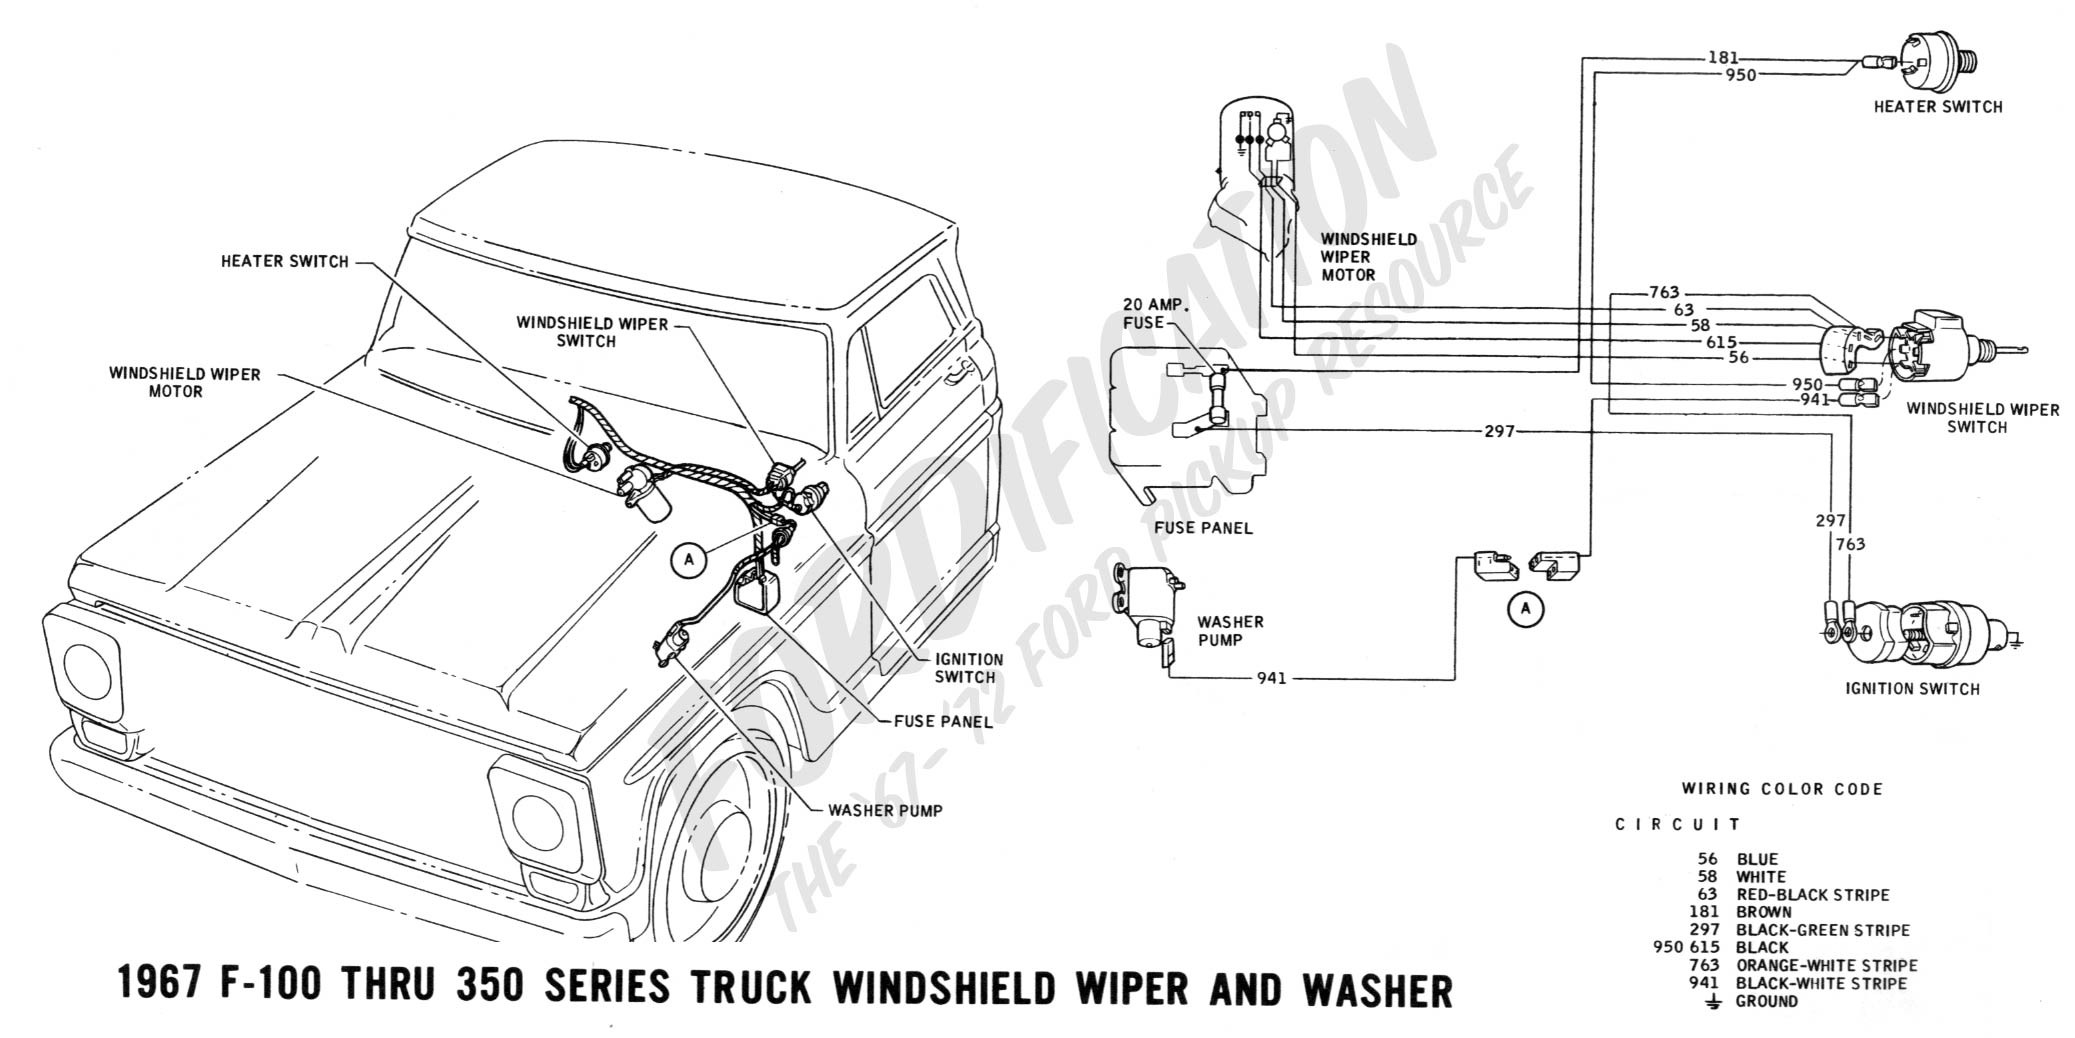 1967 F 100 thru F 350 windshield wiper and washer